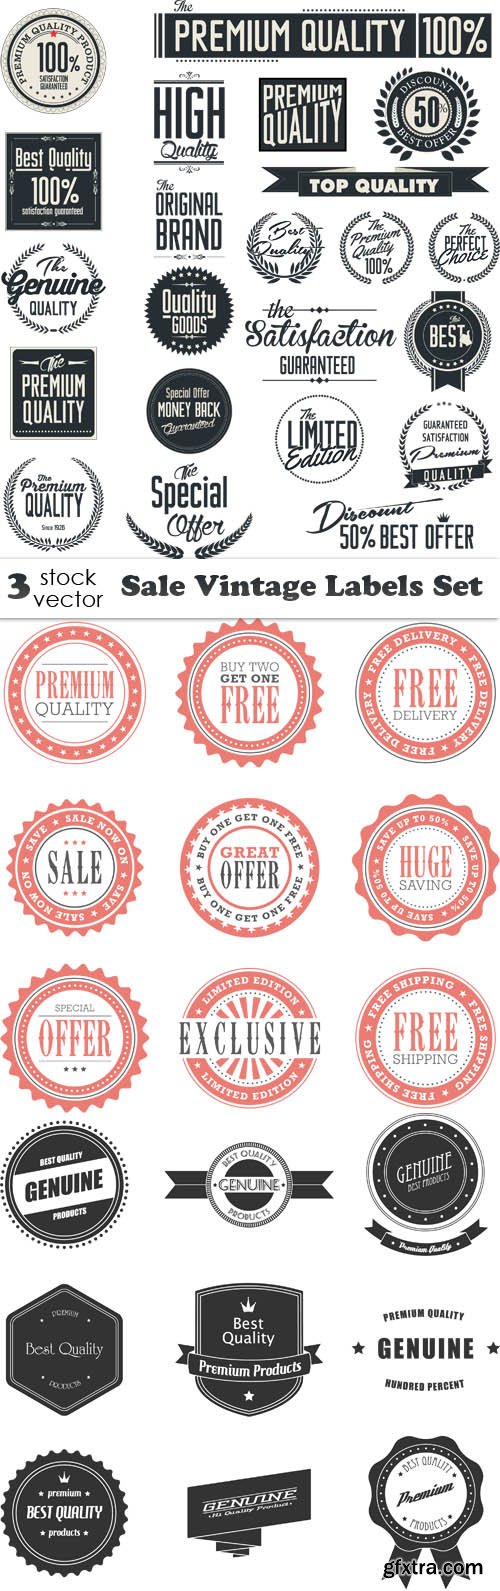 Vectors - Sale Vintage Labels Set